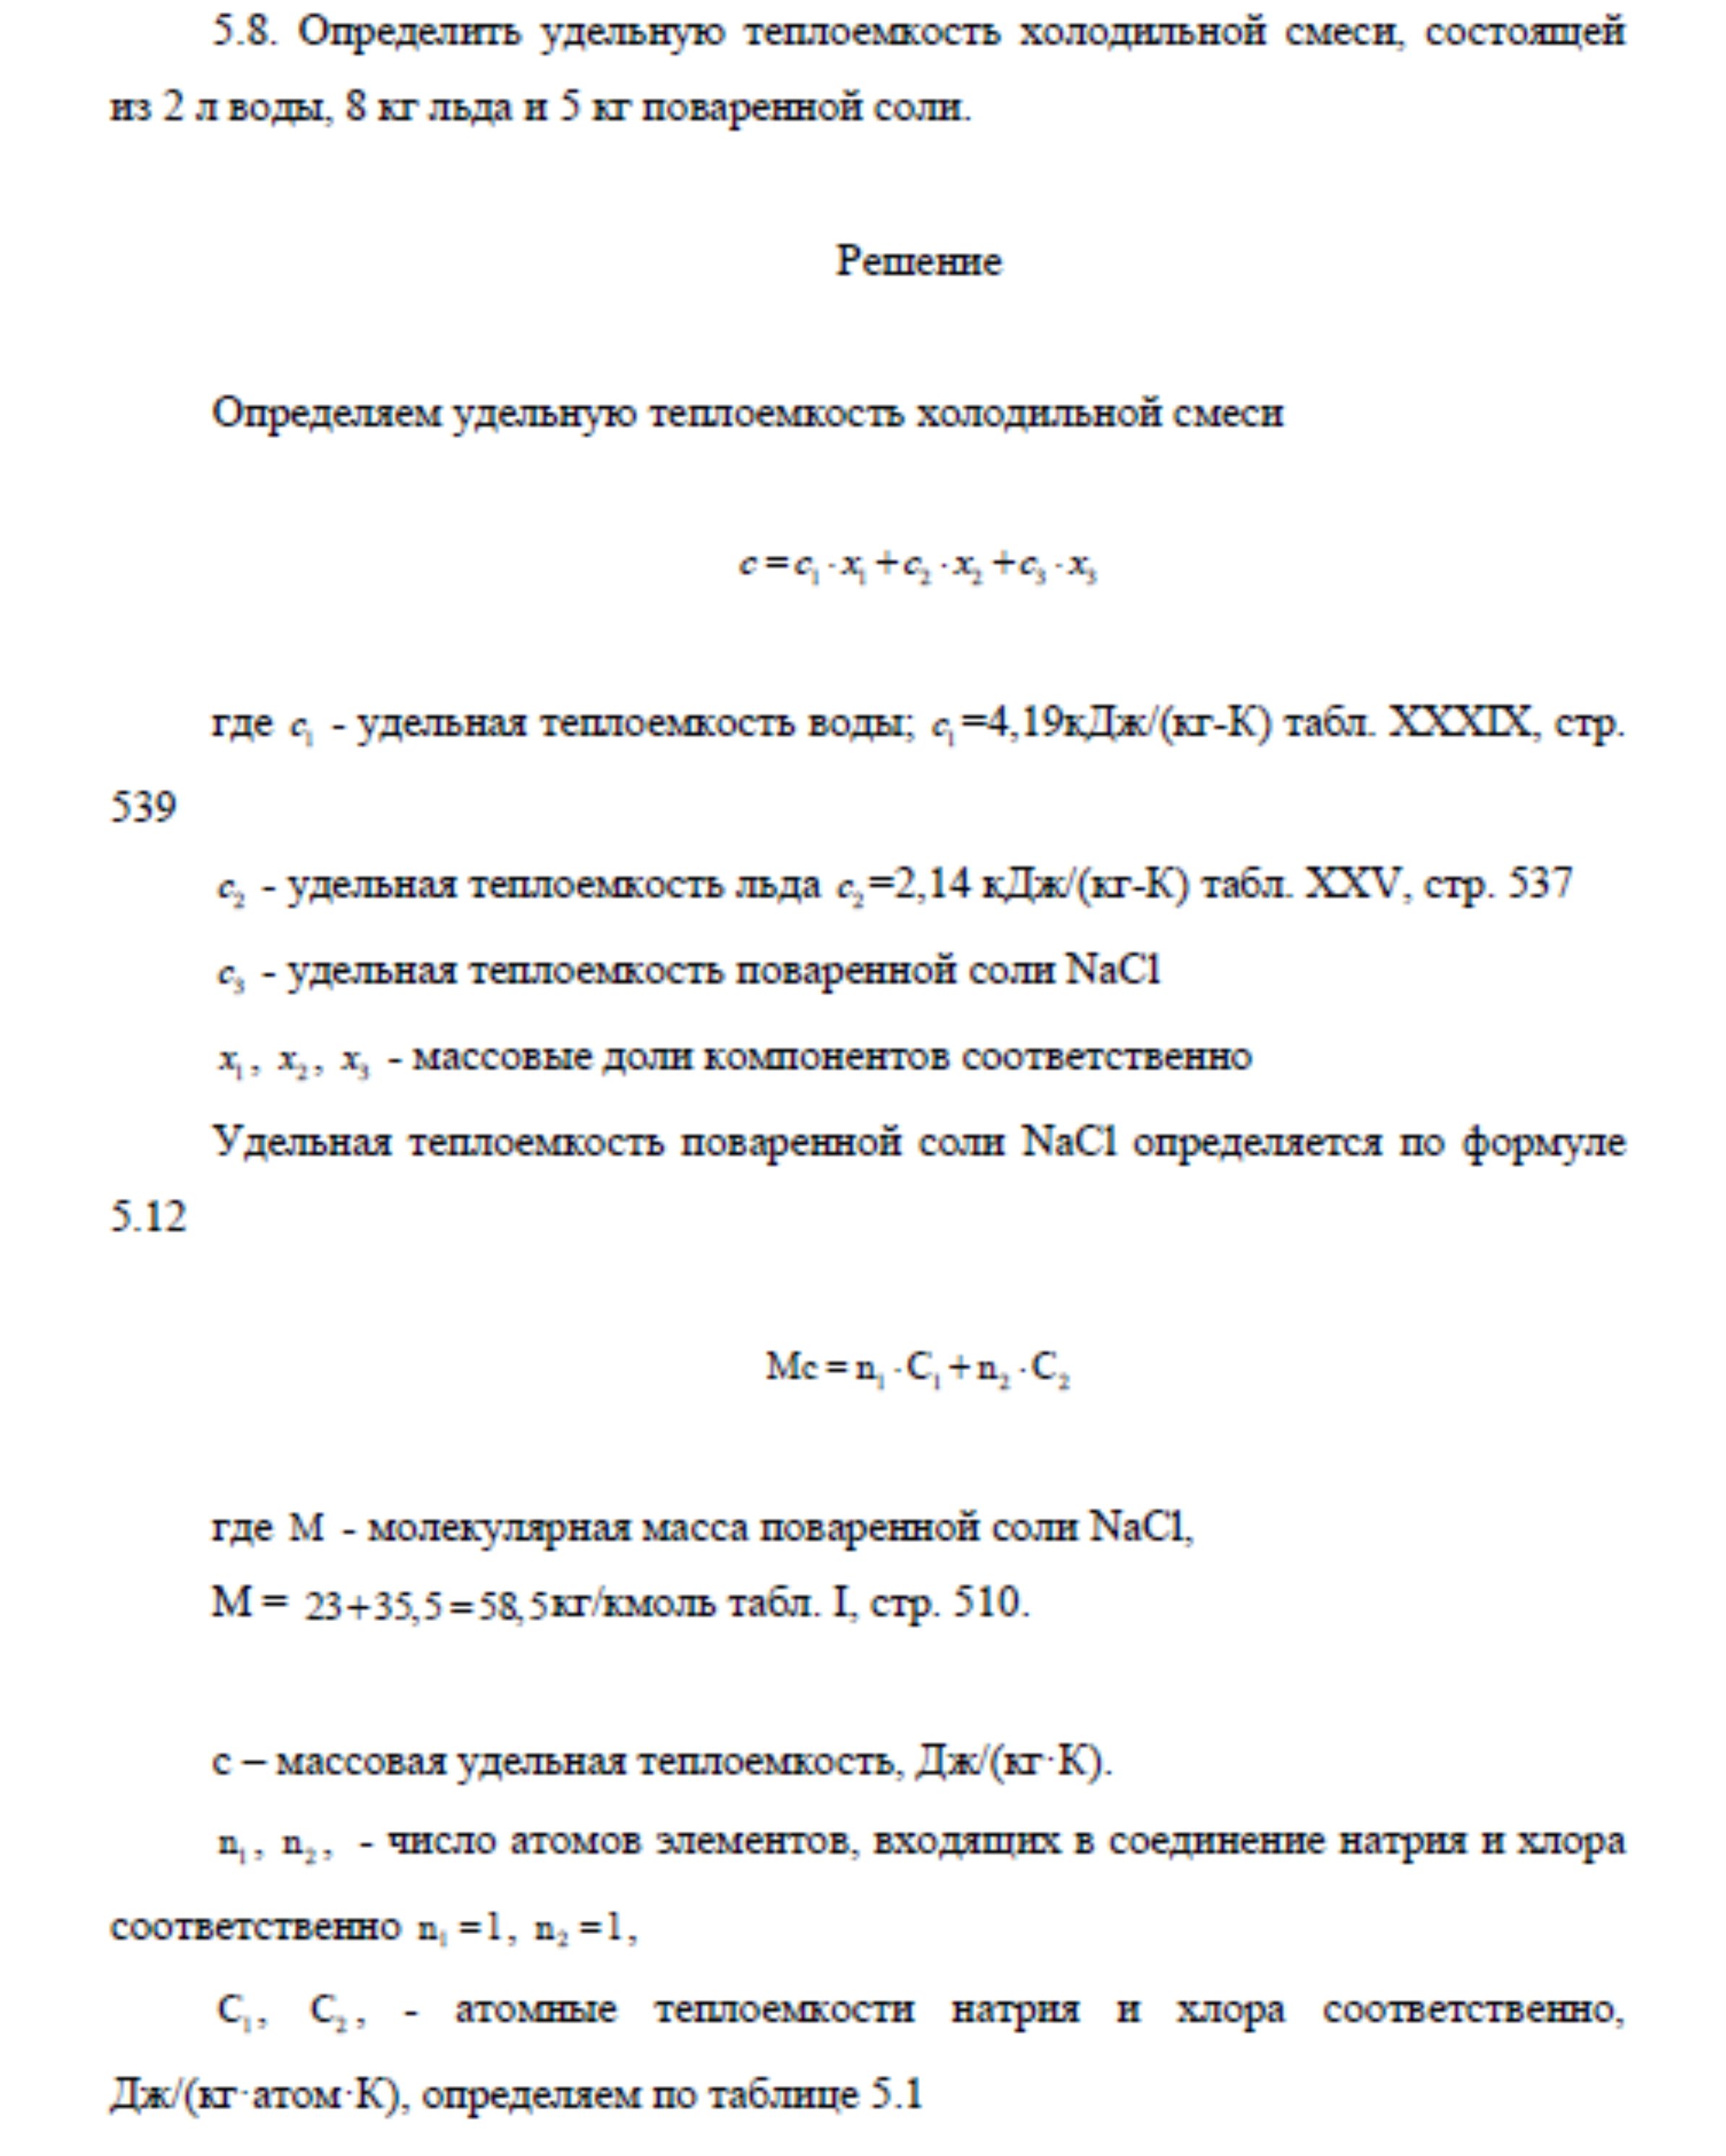 Решение задачи 5.8 по ПАХТ из задачника Павлова Романкова Носкова